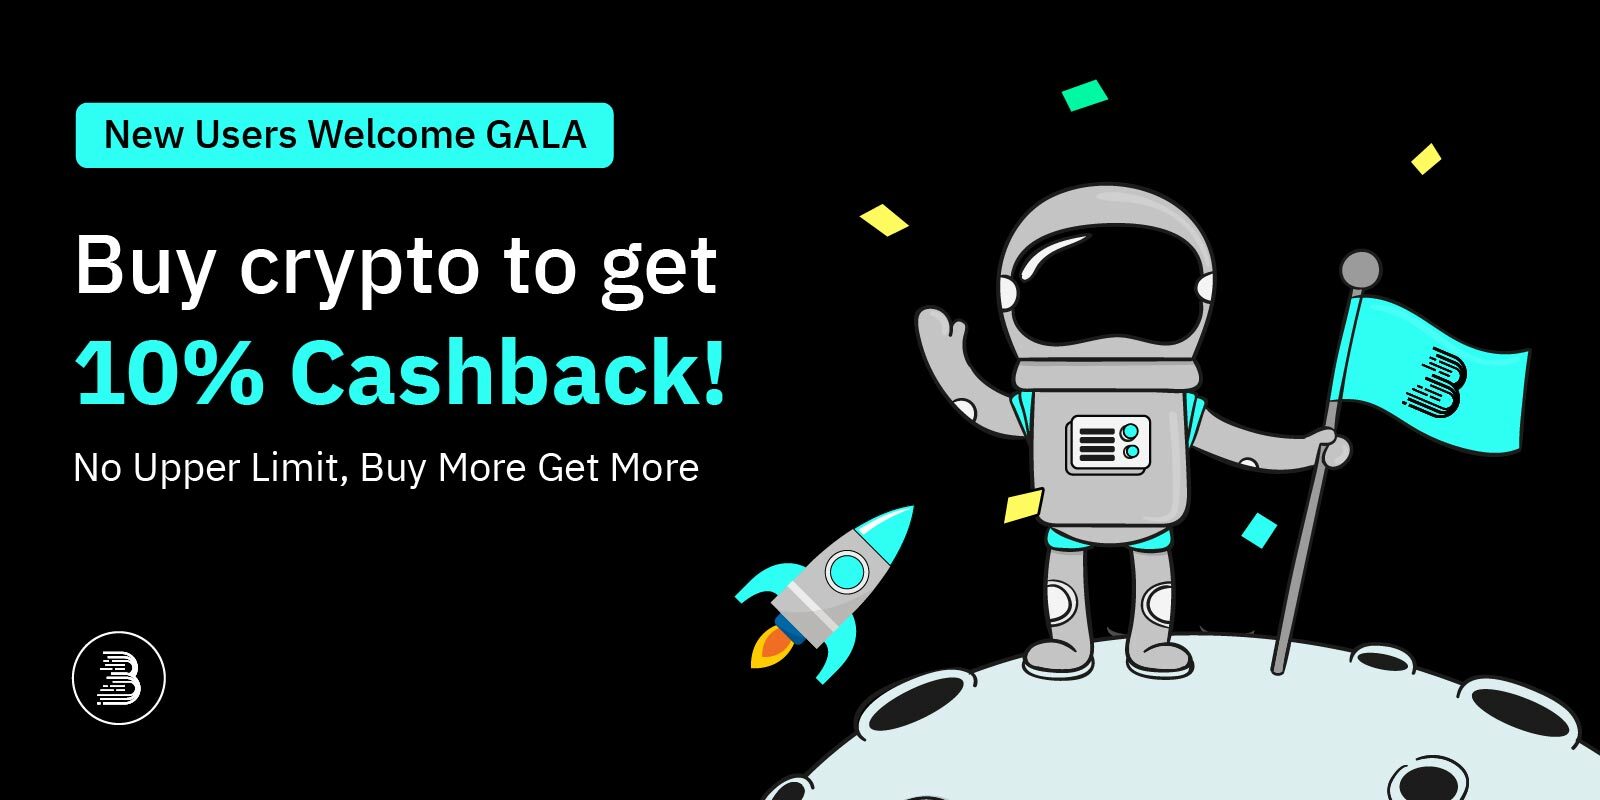 New Users Welcome GALA-01.jpg